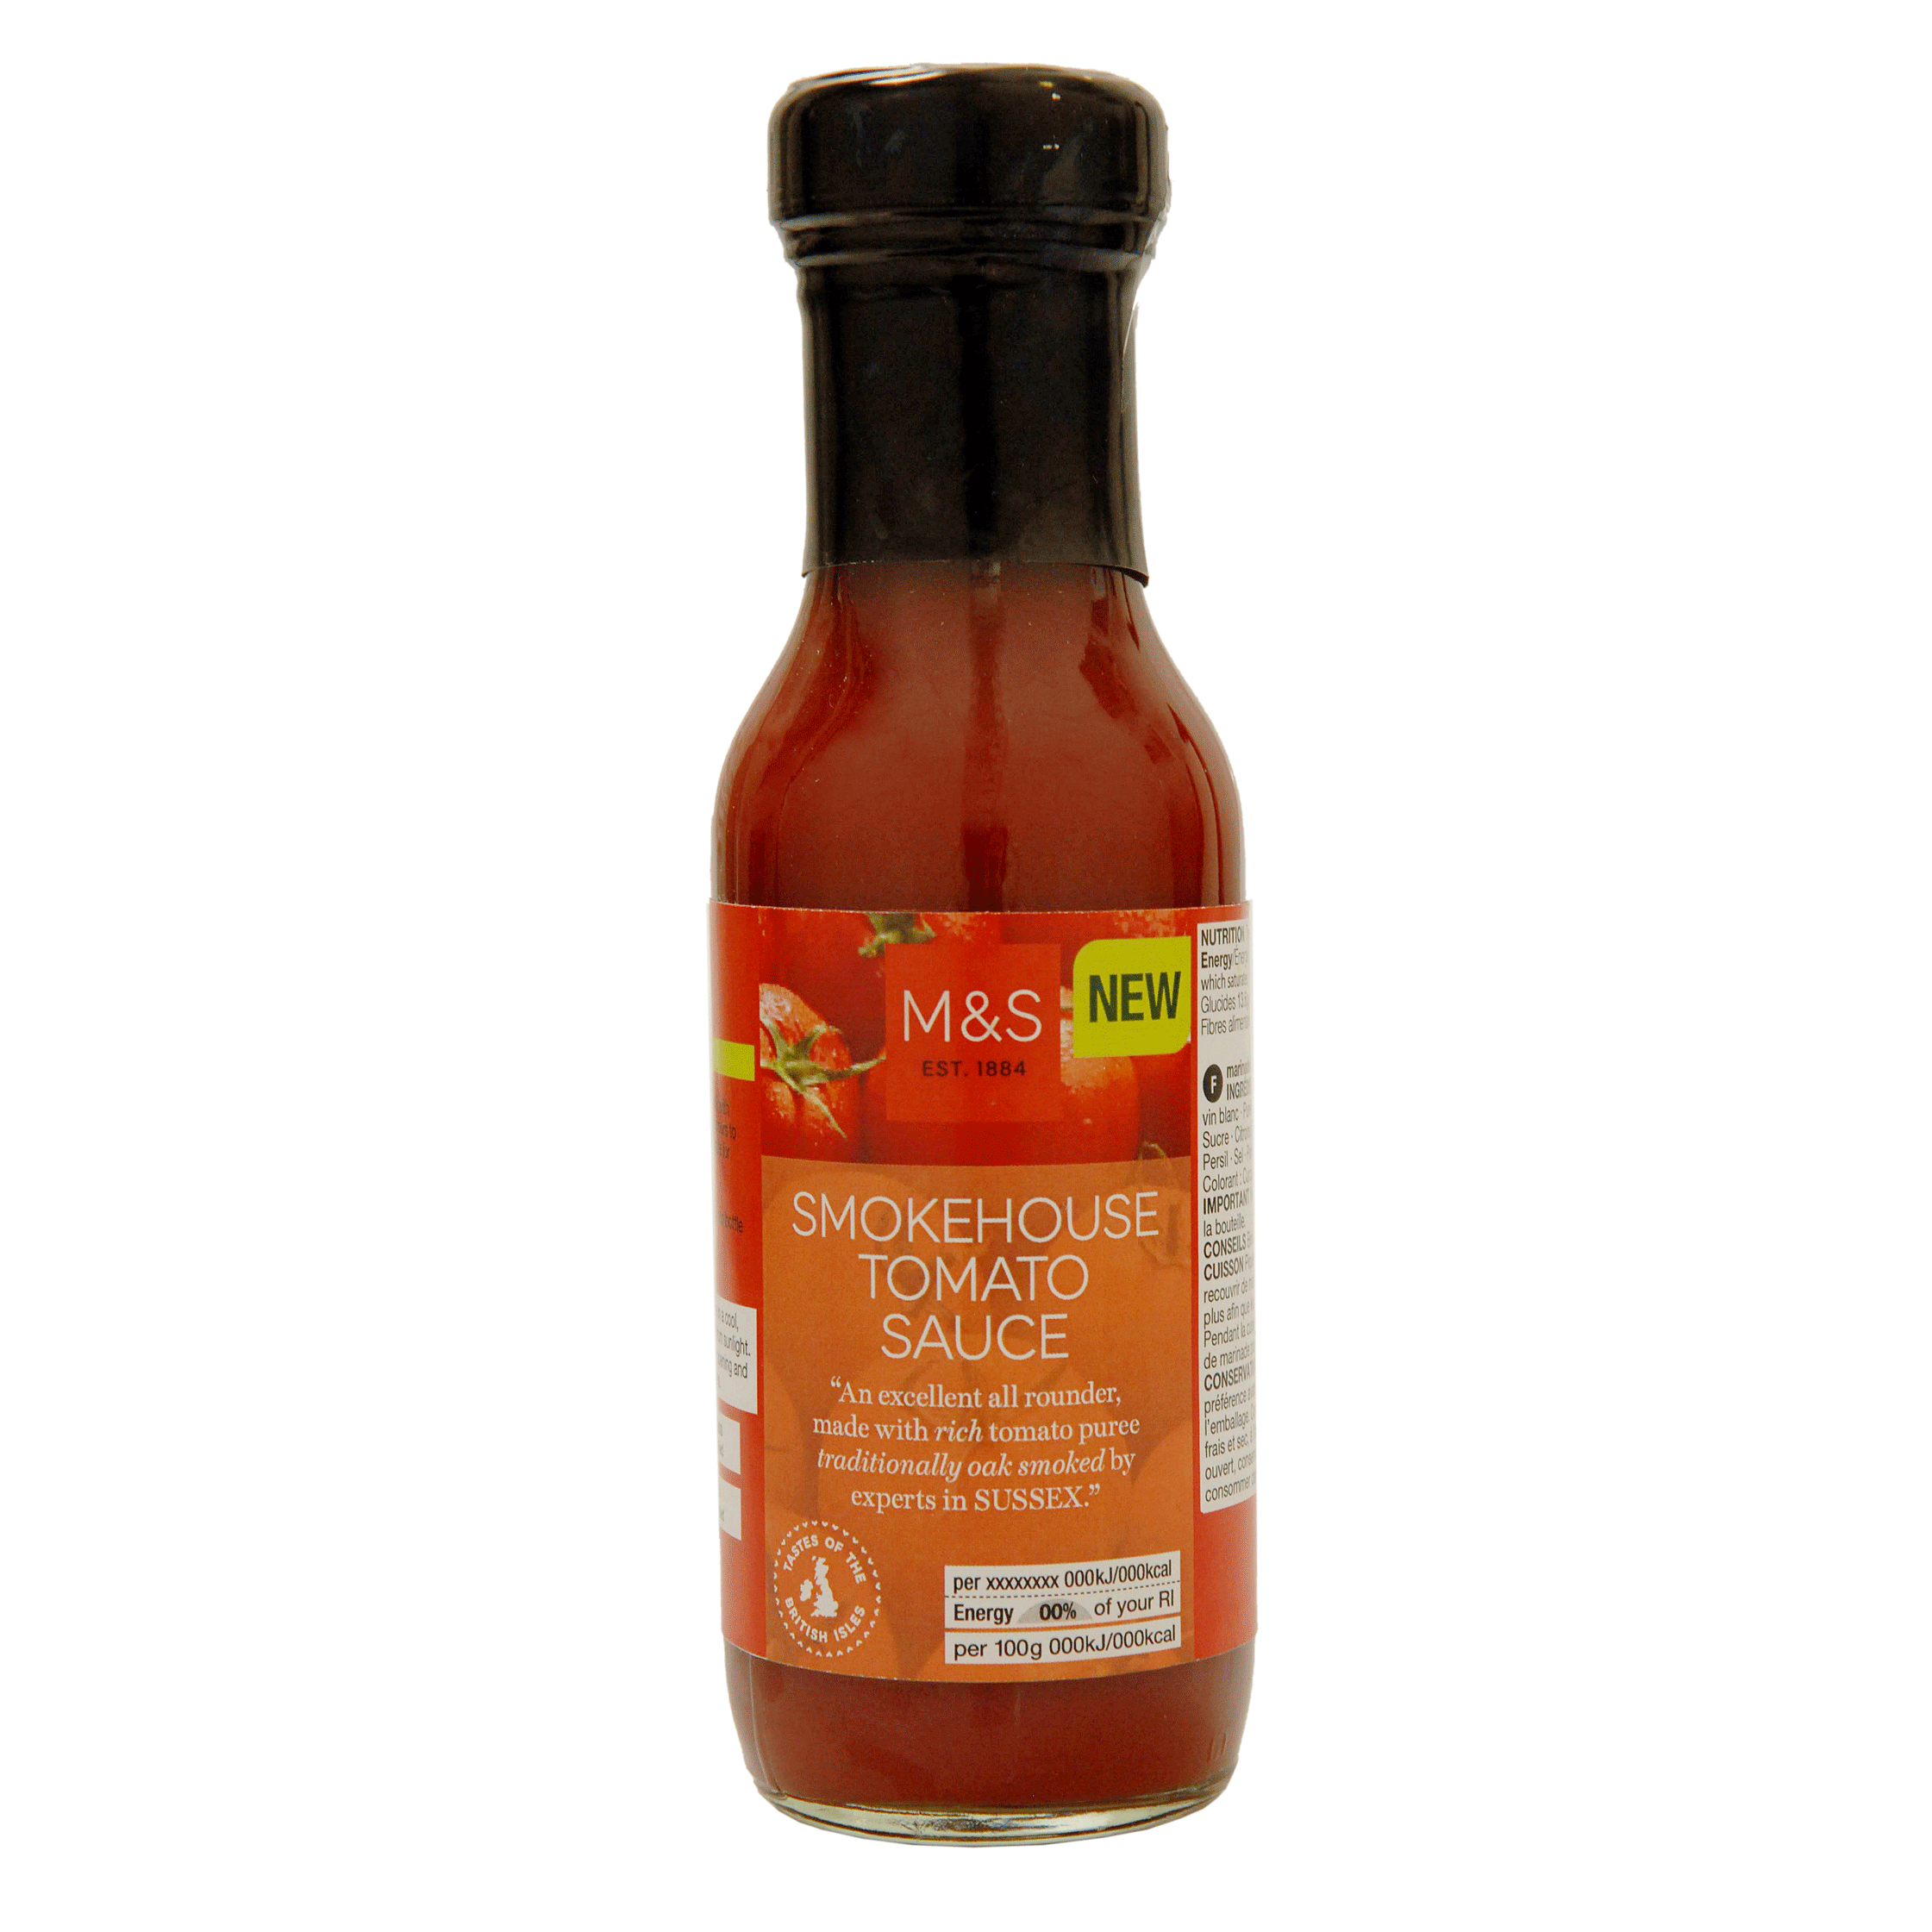 M&S's Smokehouse Tomato Sauce